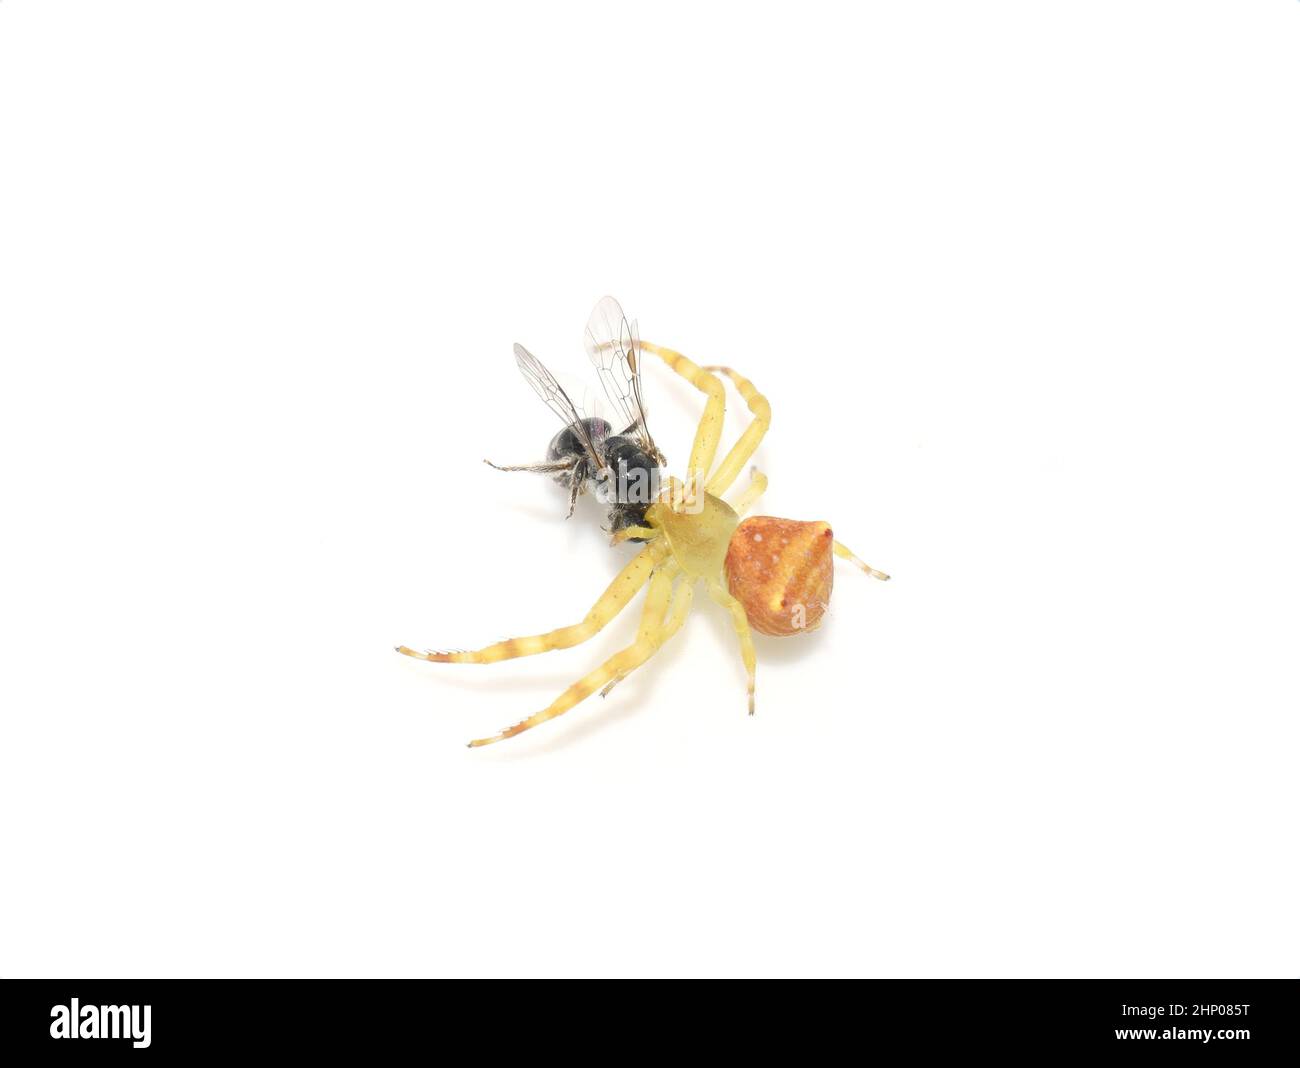 Araignée de crabe Thomisidae avec petite proie d'abeille isolée sur fond blanc Banque D'Images